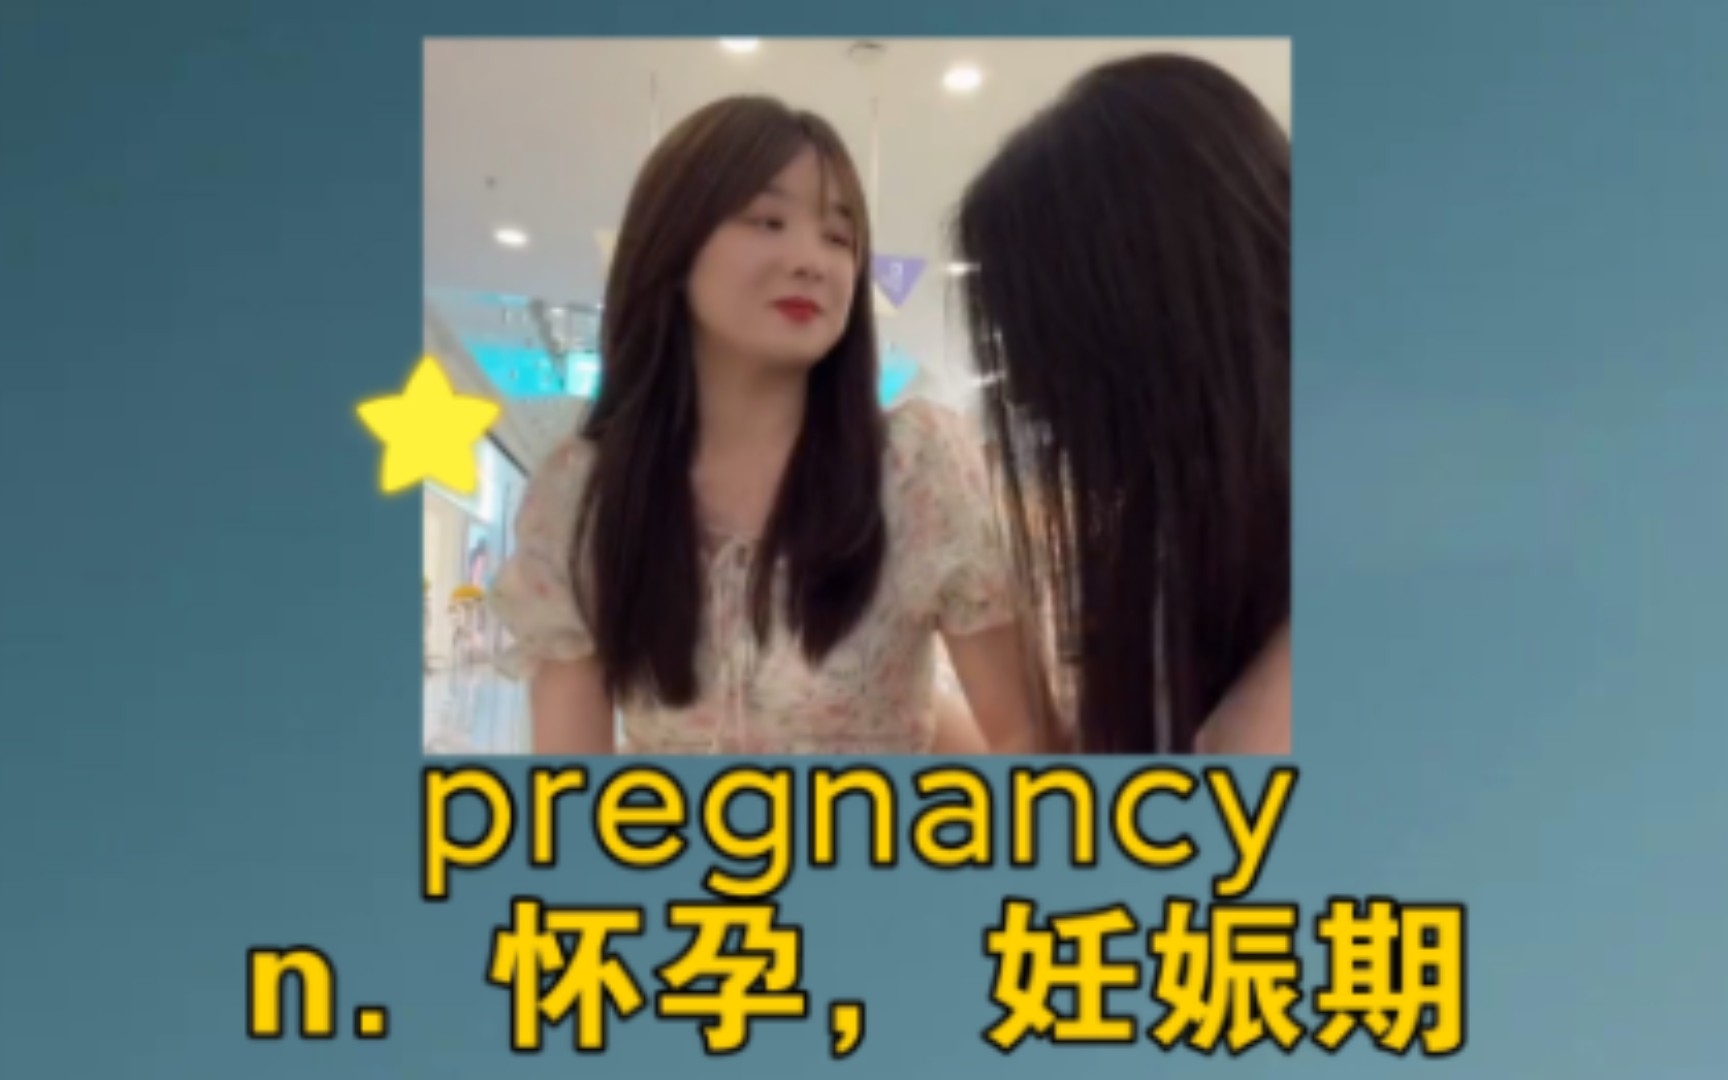 《奇怪，闺蜜们都怀孕了》 pregnancy：n. 怀孕，妊娠期